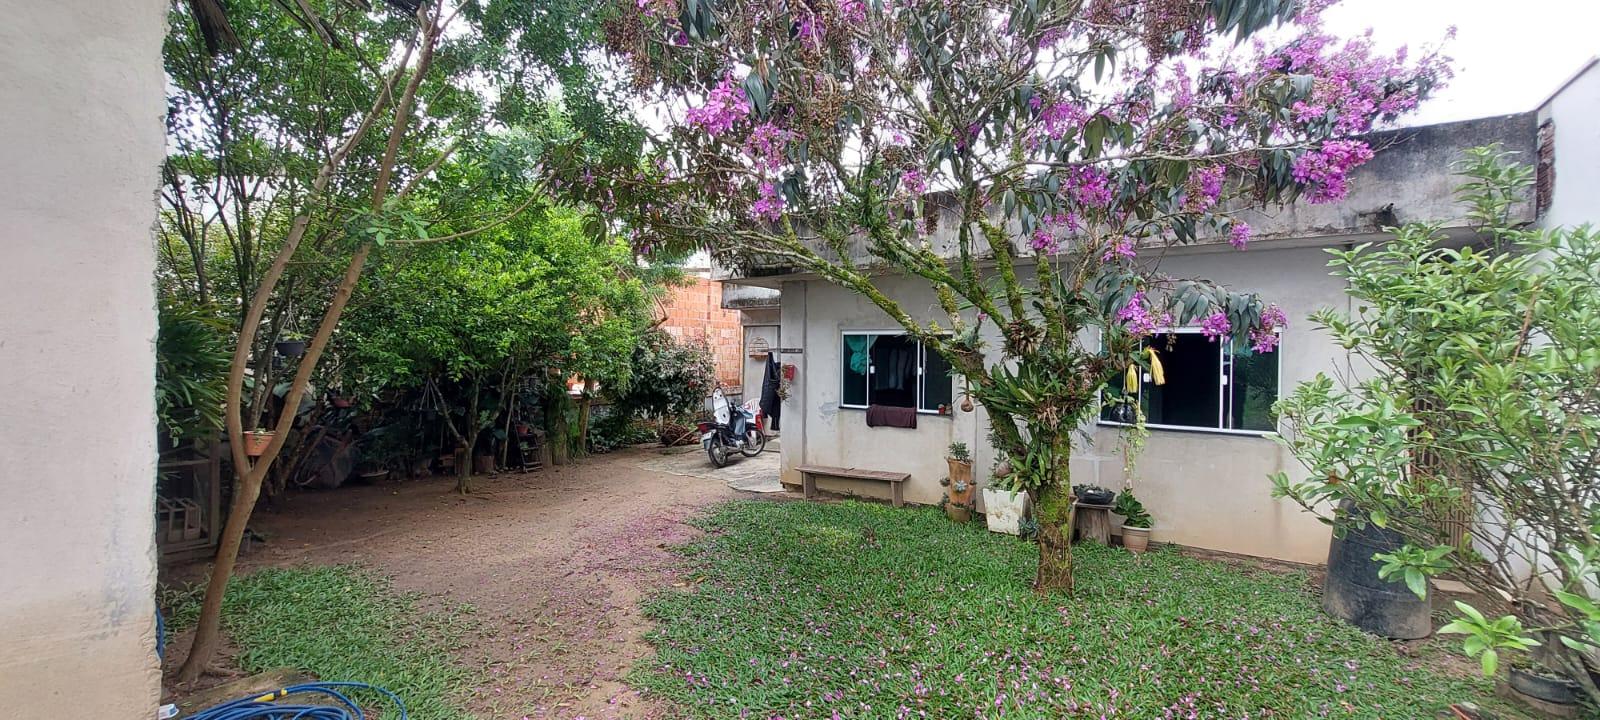 Terreno com casa nos fundos bairro São Francisco Camboriú/SC